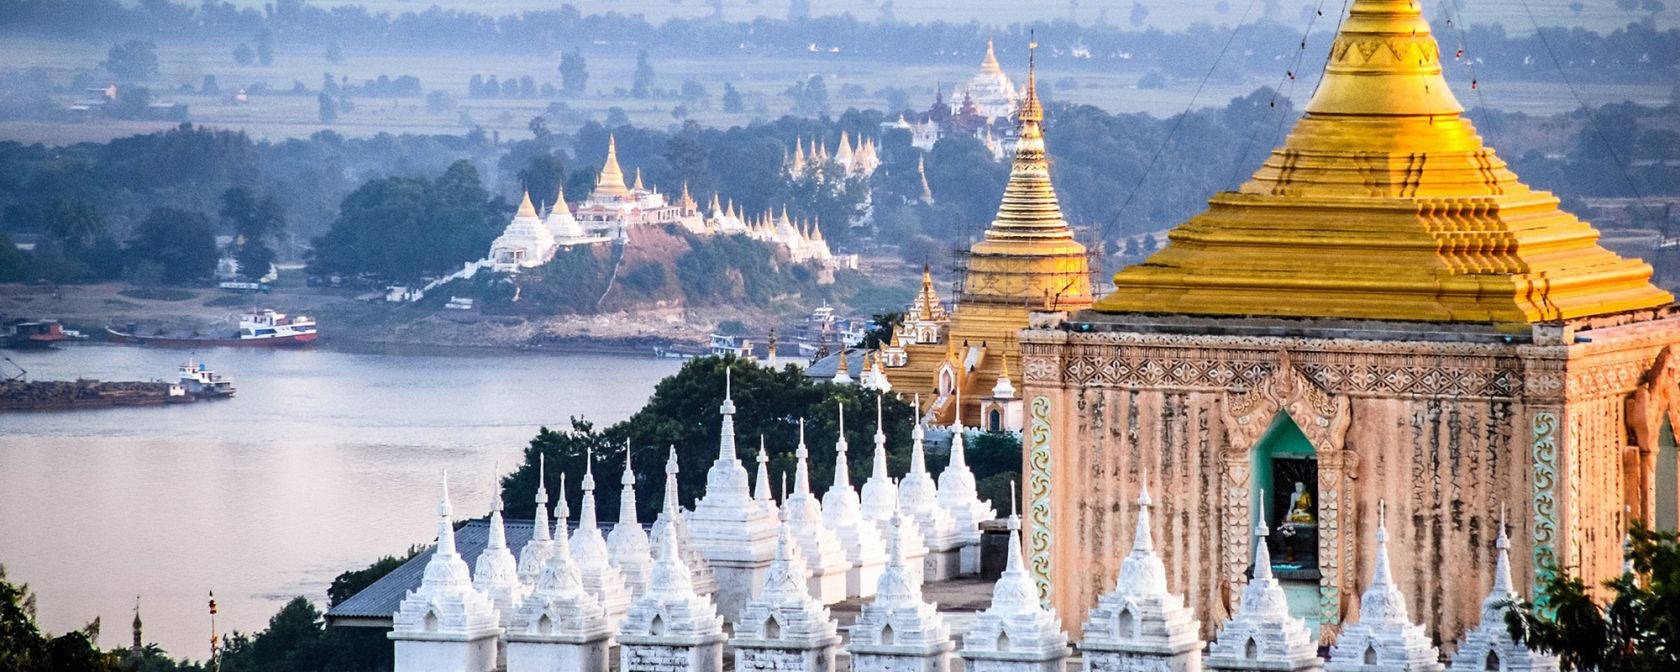 Download Mandalay Hill Myanmar Wallpaper | Wallpapers.com